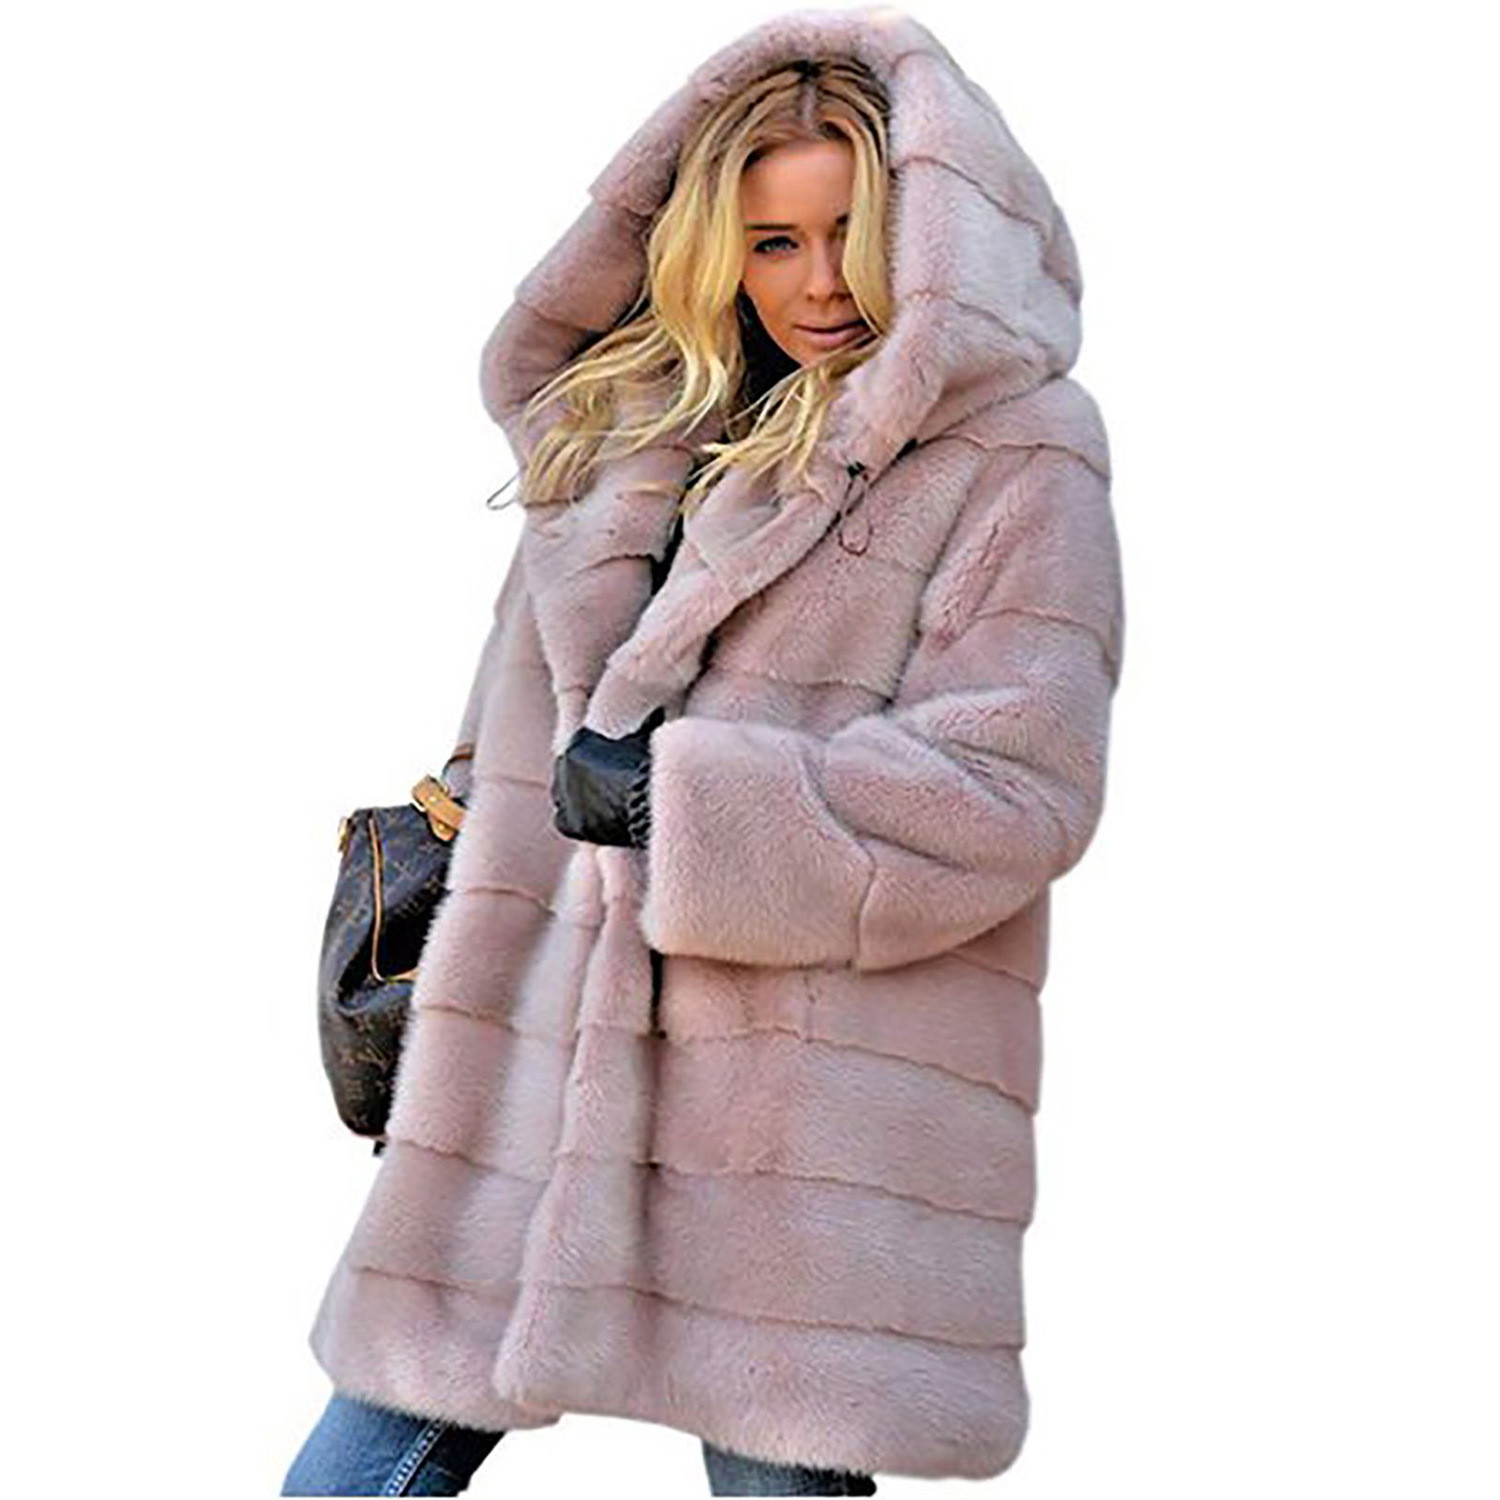 Νέο μοντέλο γυναικείου μακρύ  παλτό μεκουκούλα σε ροζ, μαύρο και γκρι χρώμα